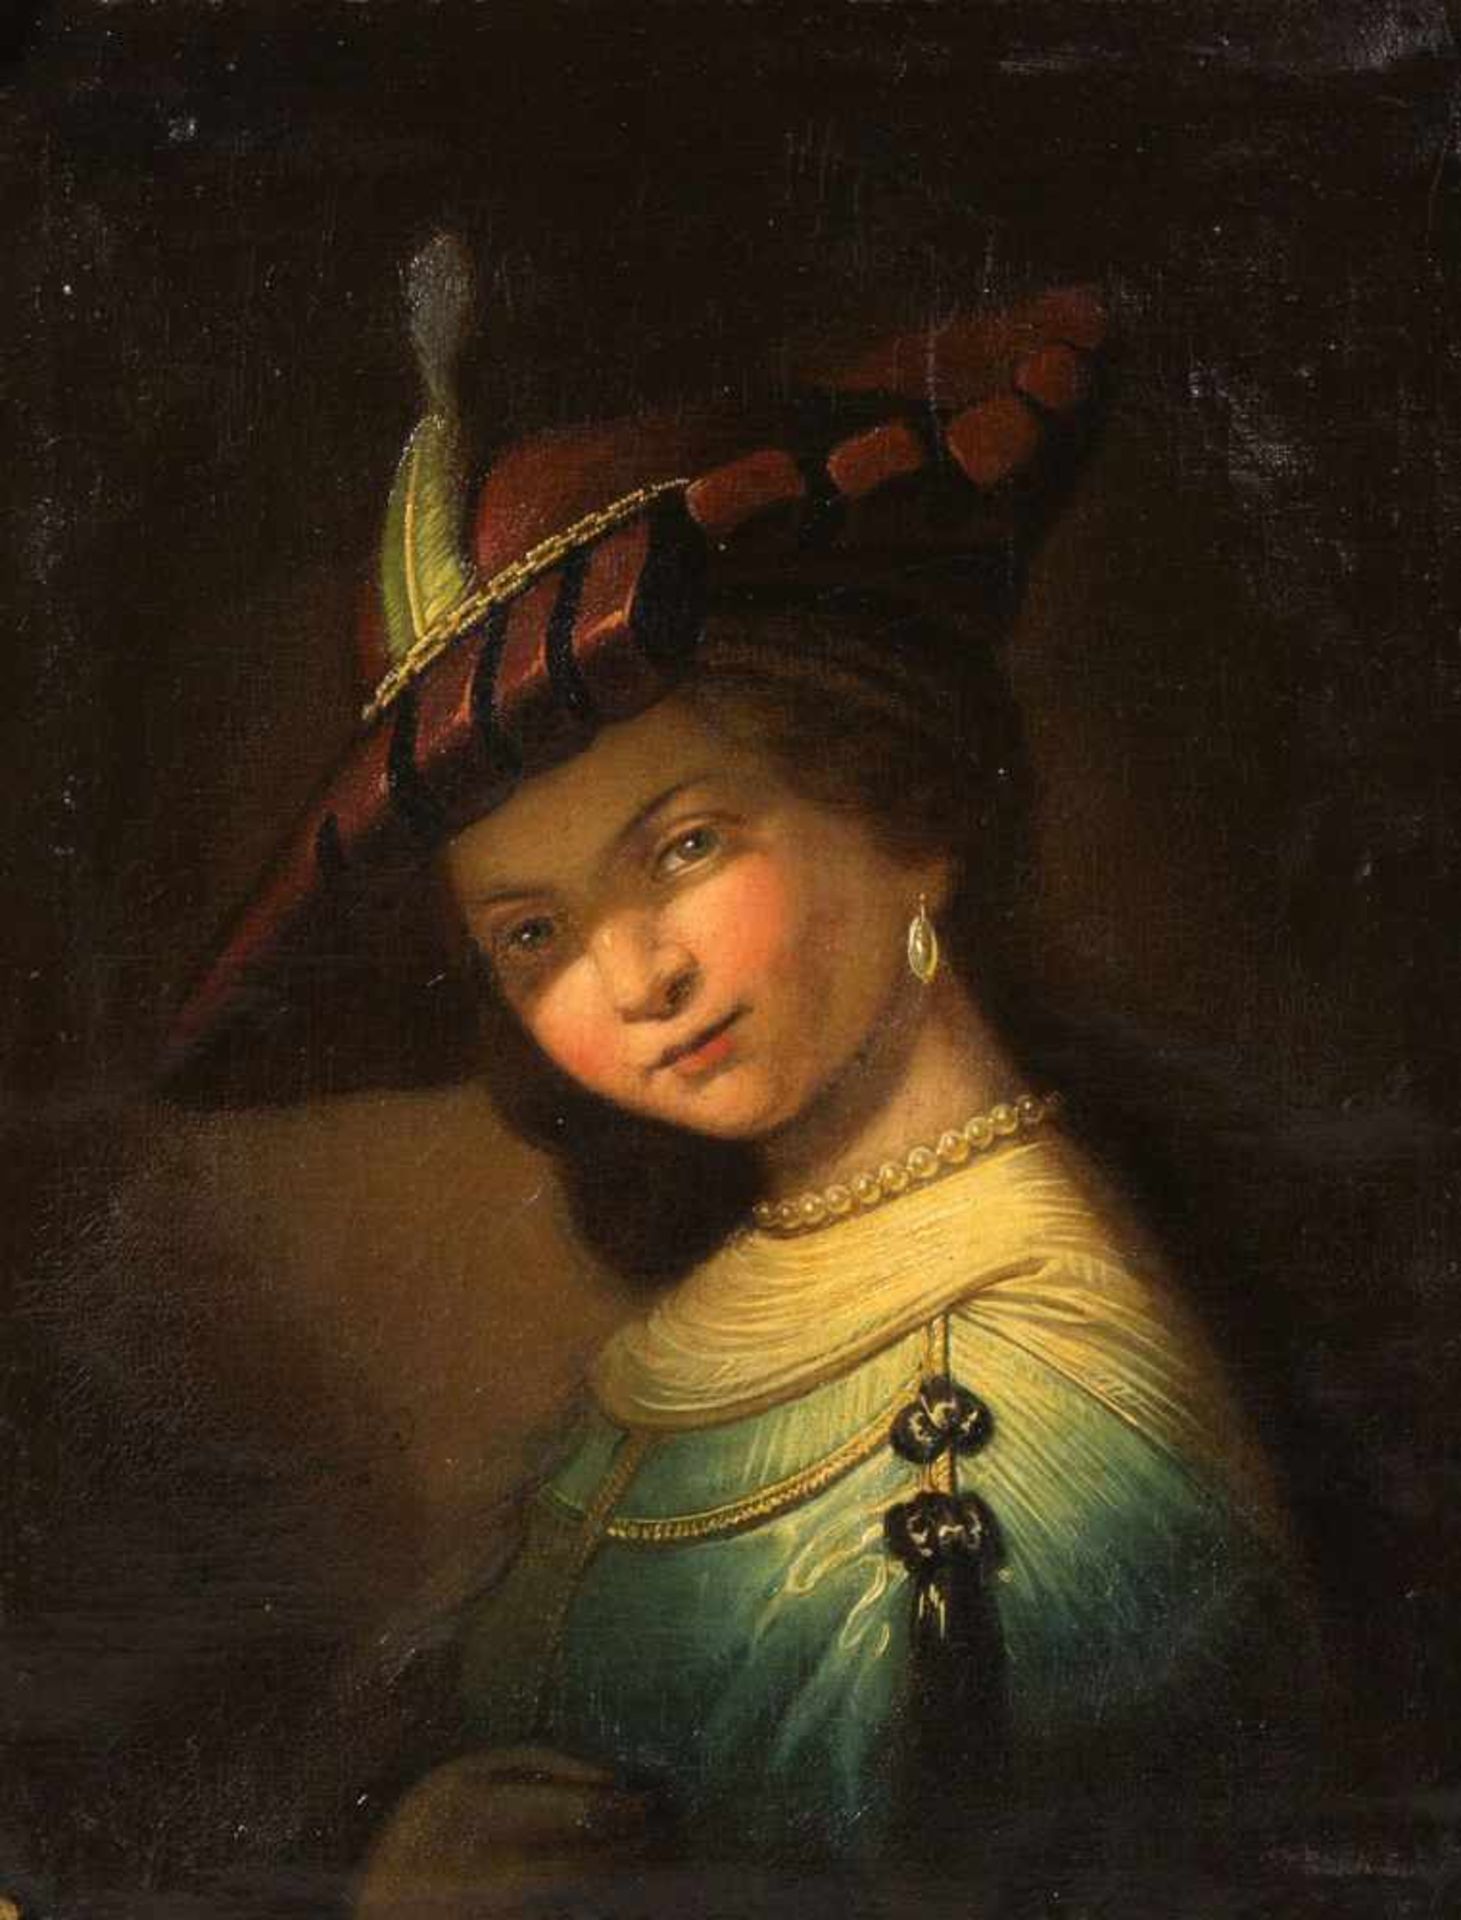 Unbekannt, Ende 19. Jh.Portrait von Saskia nach Rembrandt. Öl/Lwd. 55 x 45 cm. Gerahmt.